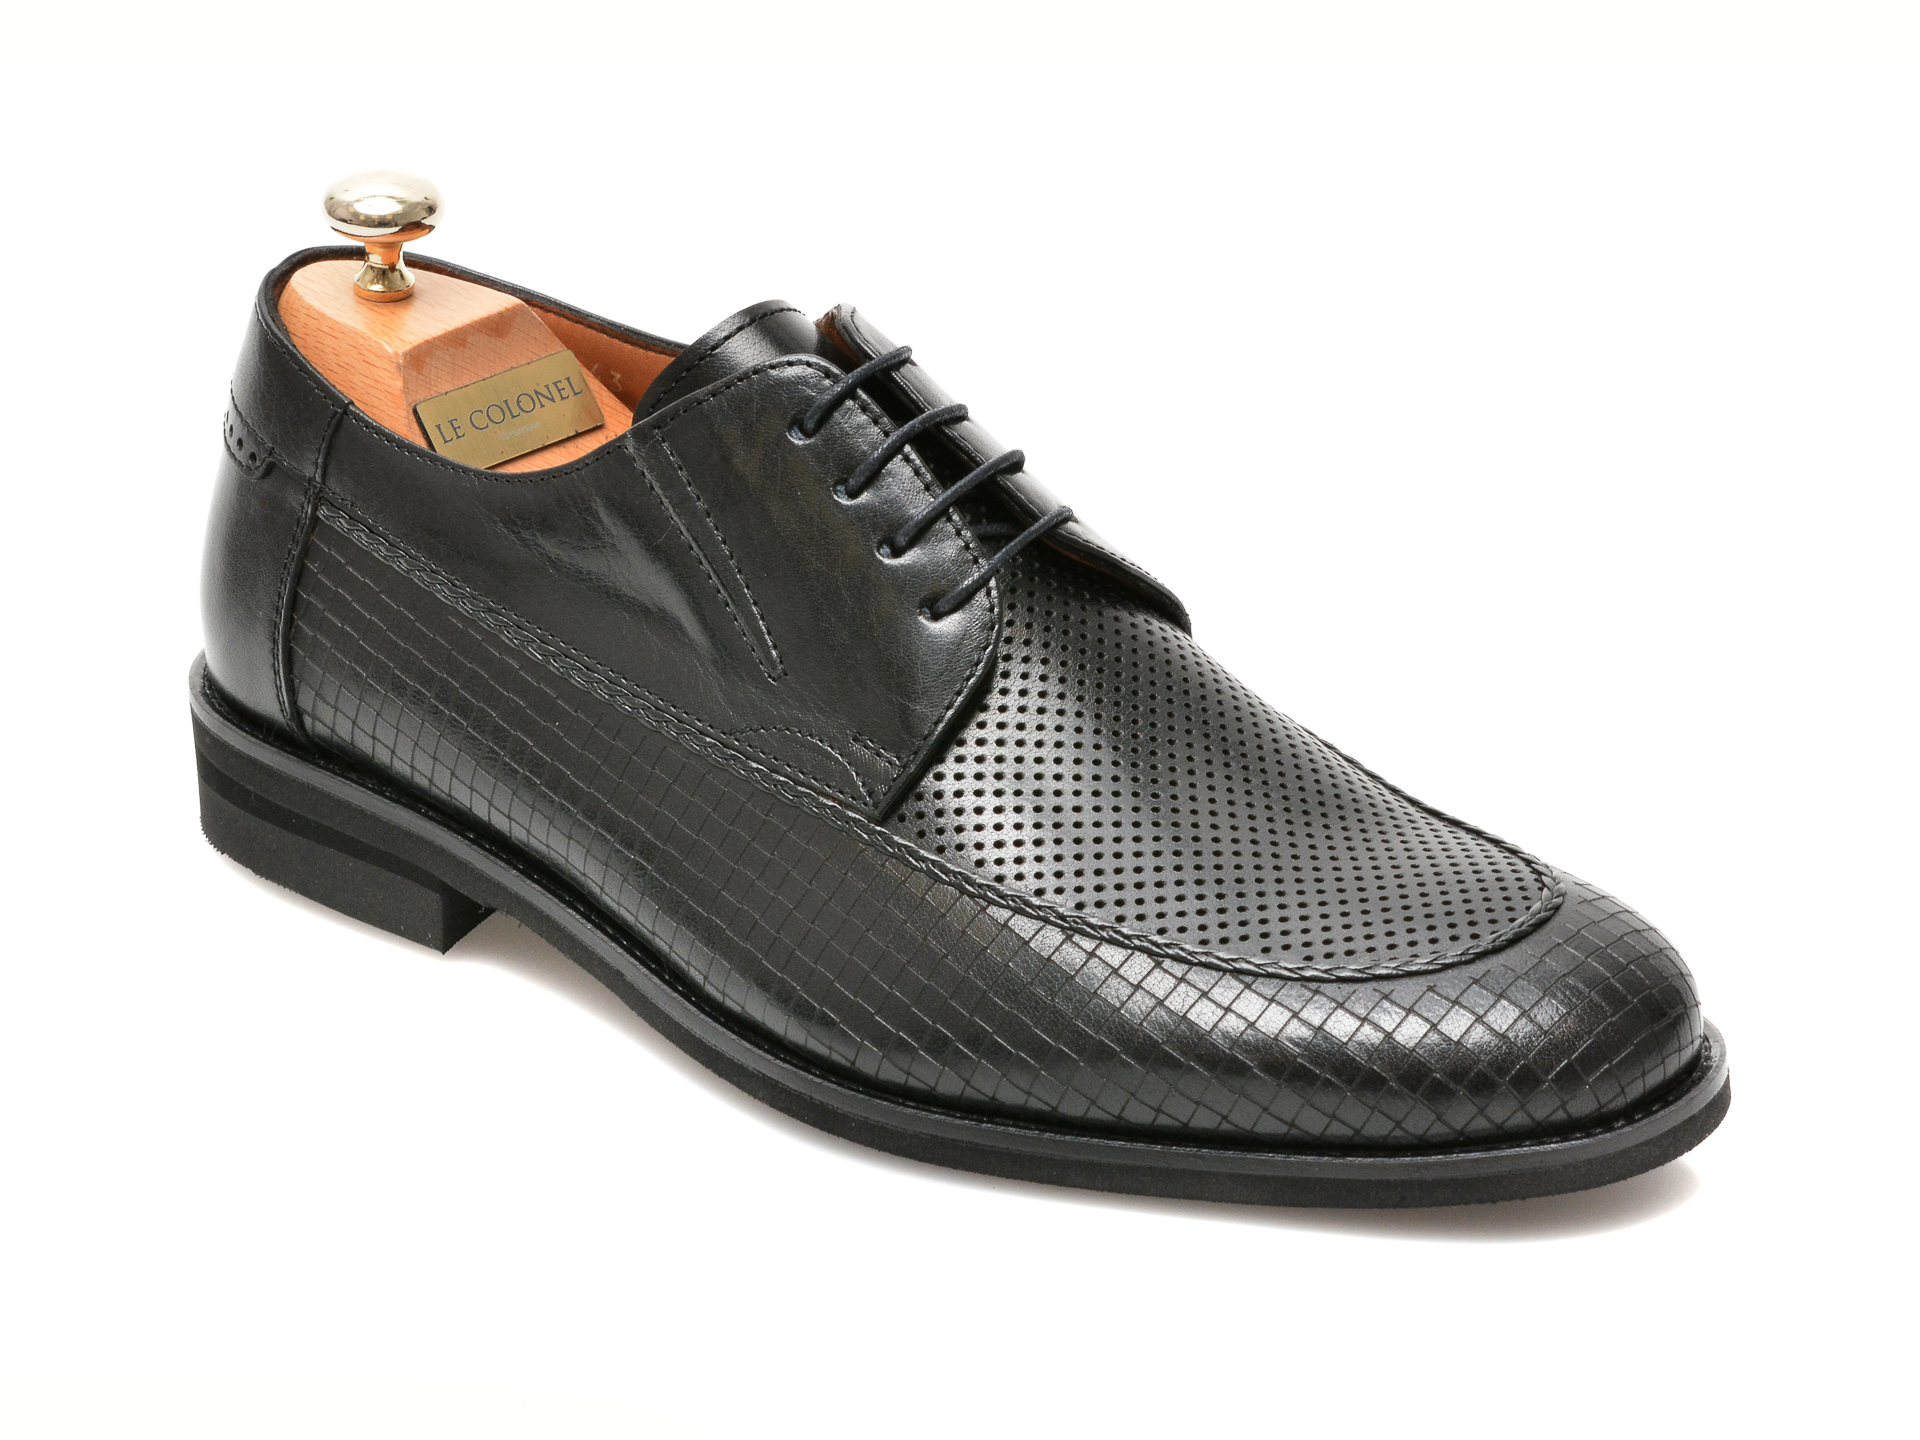 Pantofi LE COLONEL negri, 48856, din piele naturala Le Colonel imagine 2022 reducere